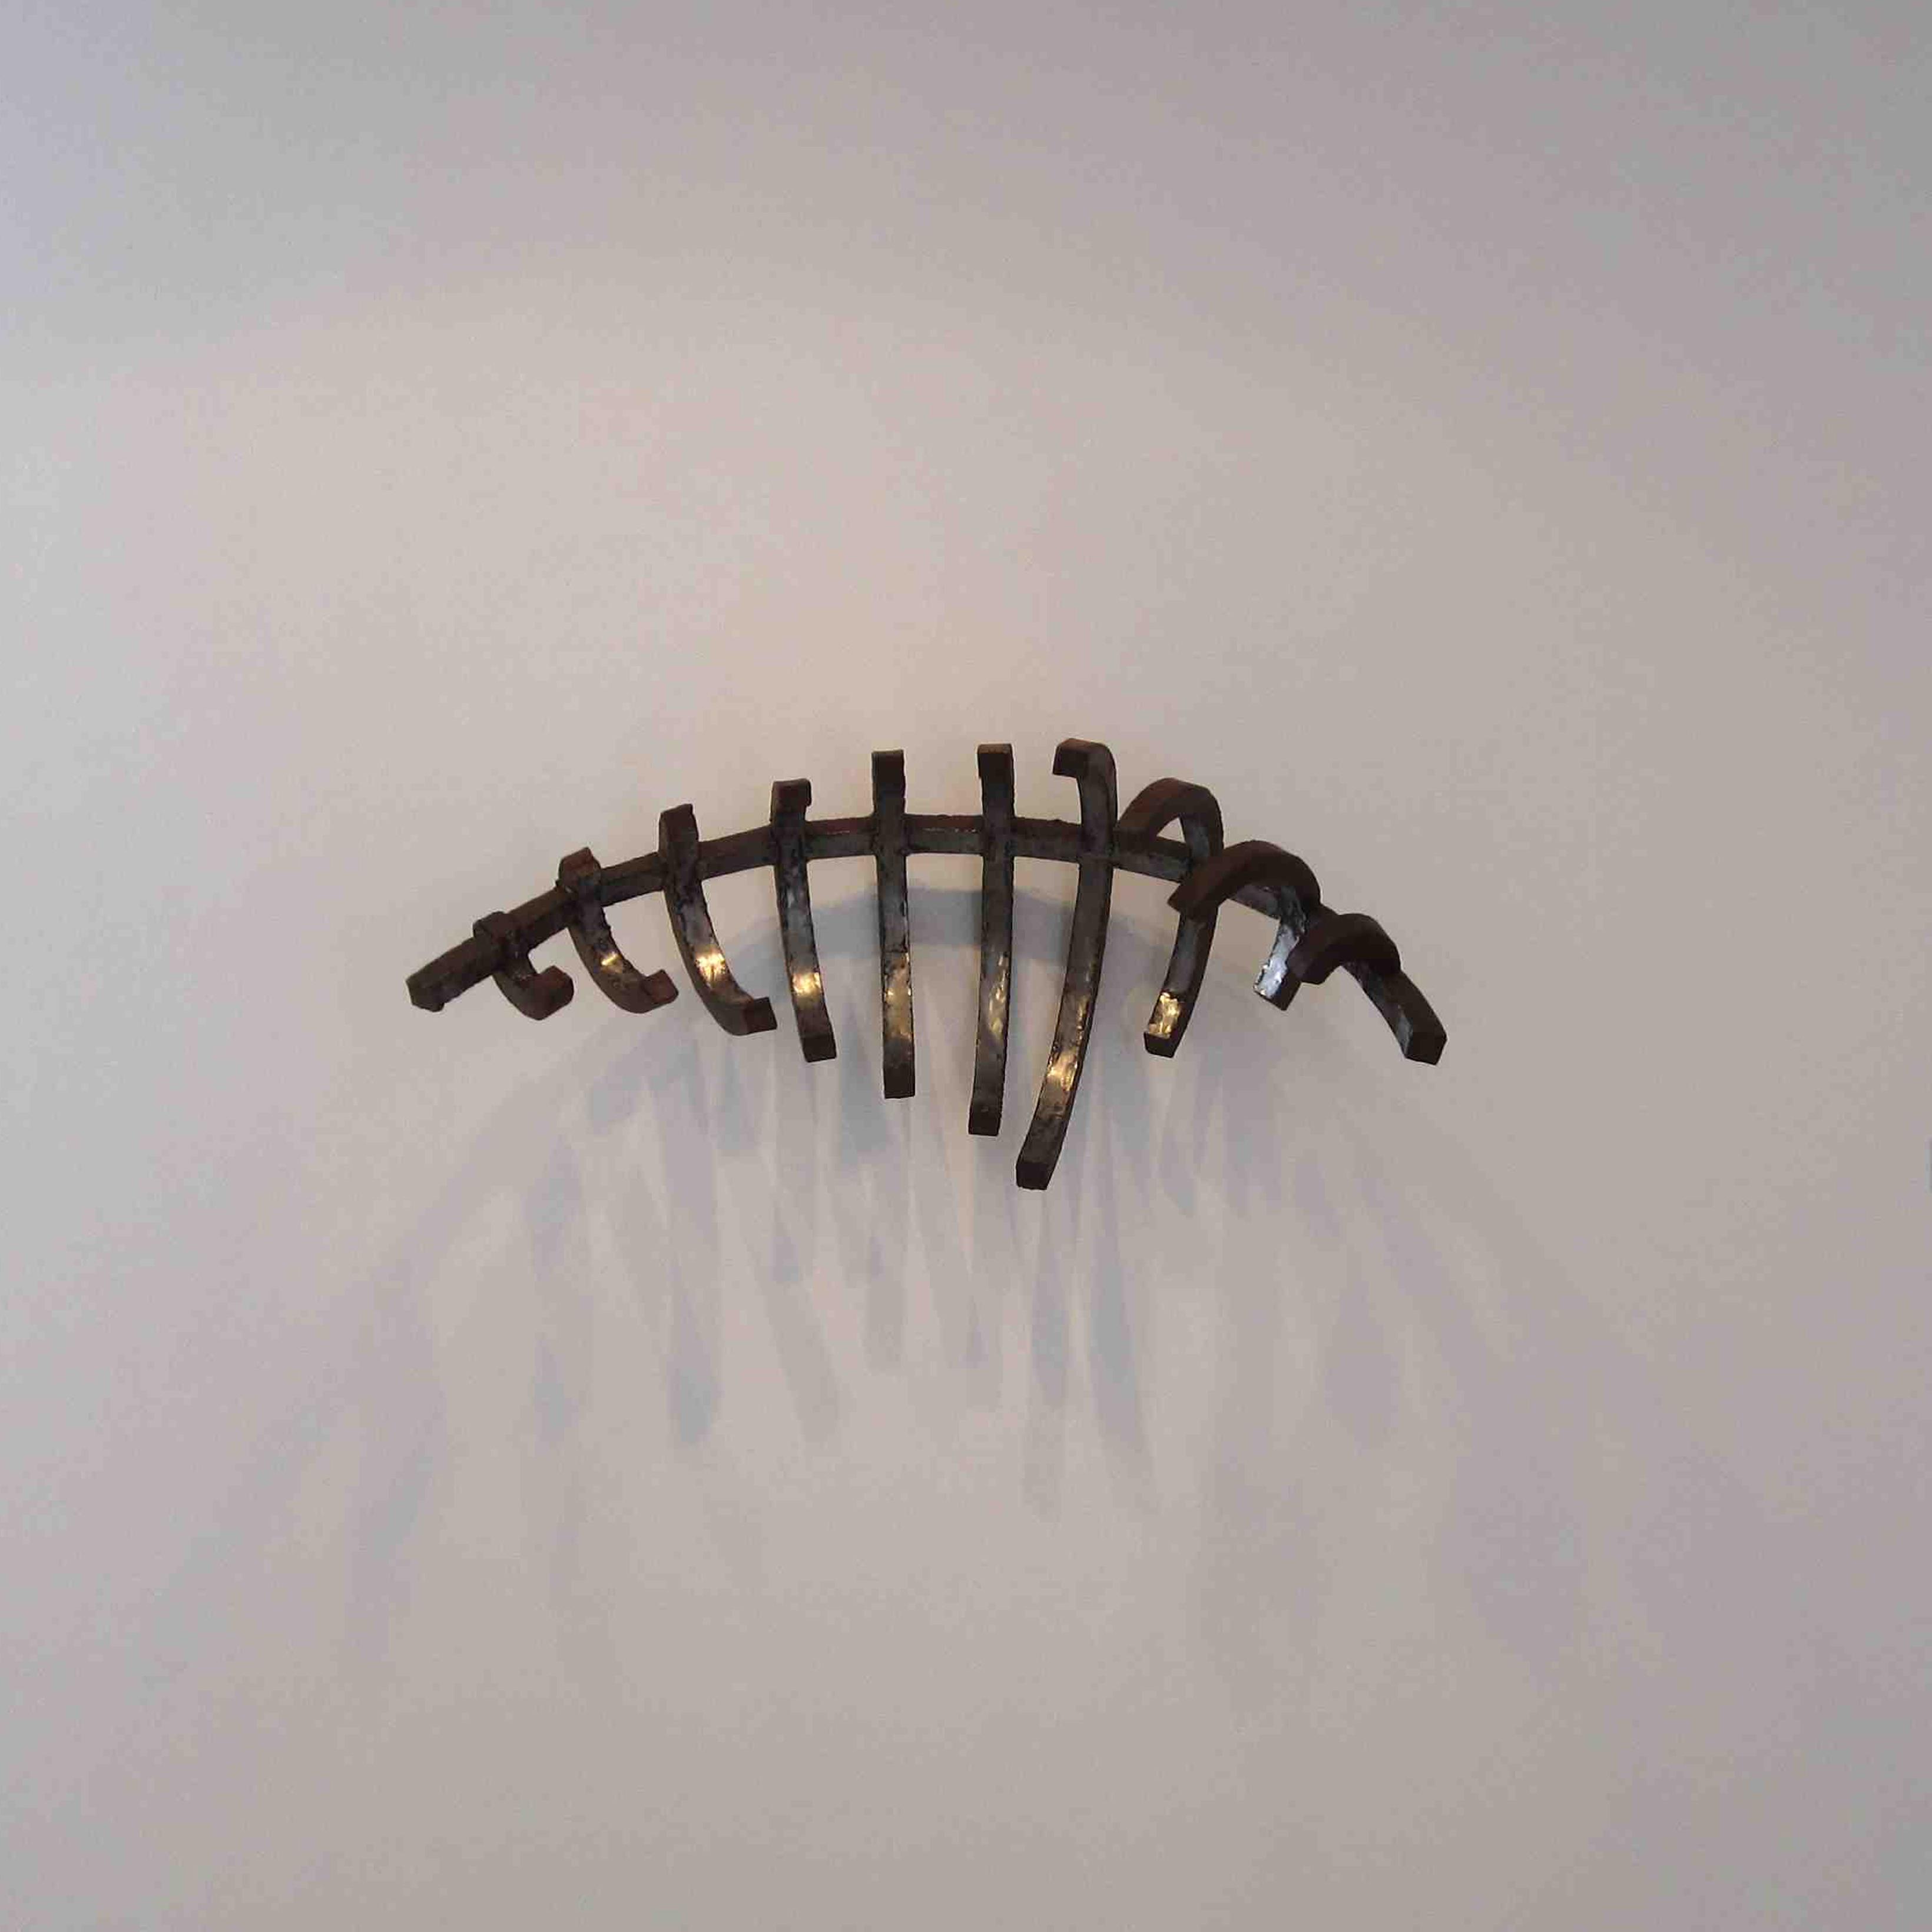 Sans Horizon II, 2014  
Sculpture matériaux composites
200 x 180 cm